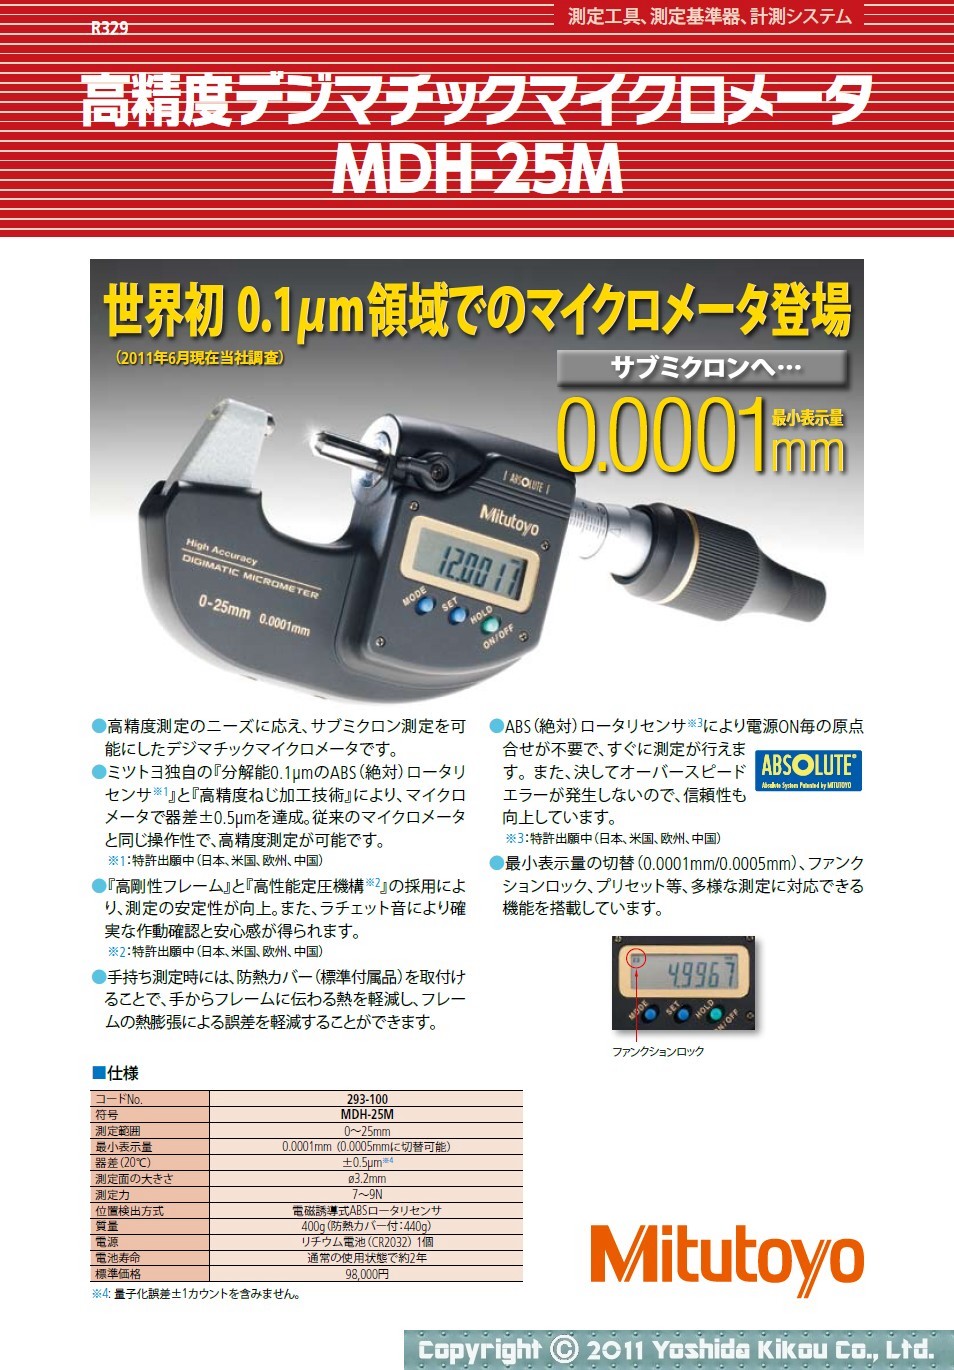 吉田機工株式会社 Yoshida Kikou Co.,Ltd.  デジマチックマイクロメータ「MDH-25M」